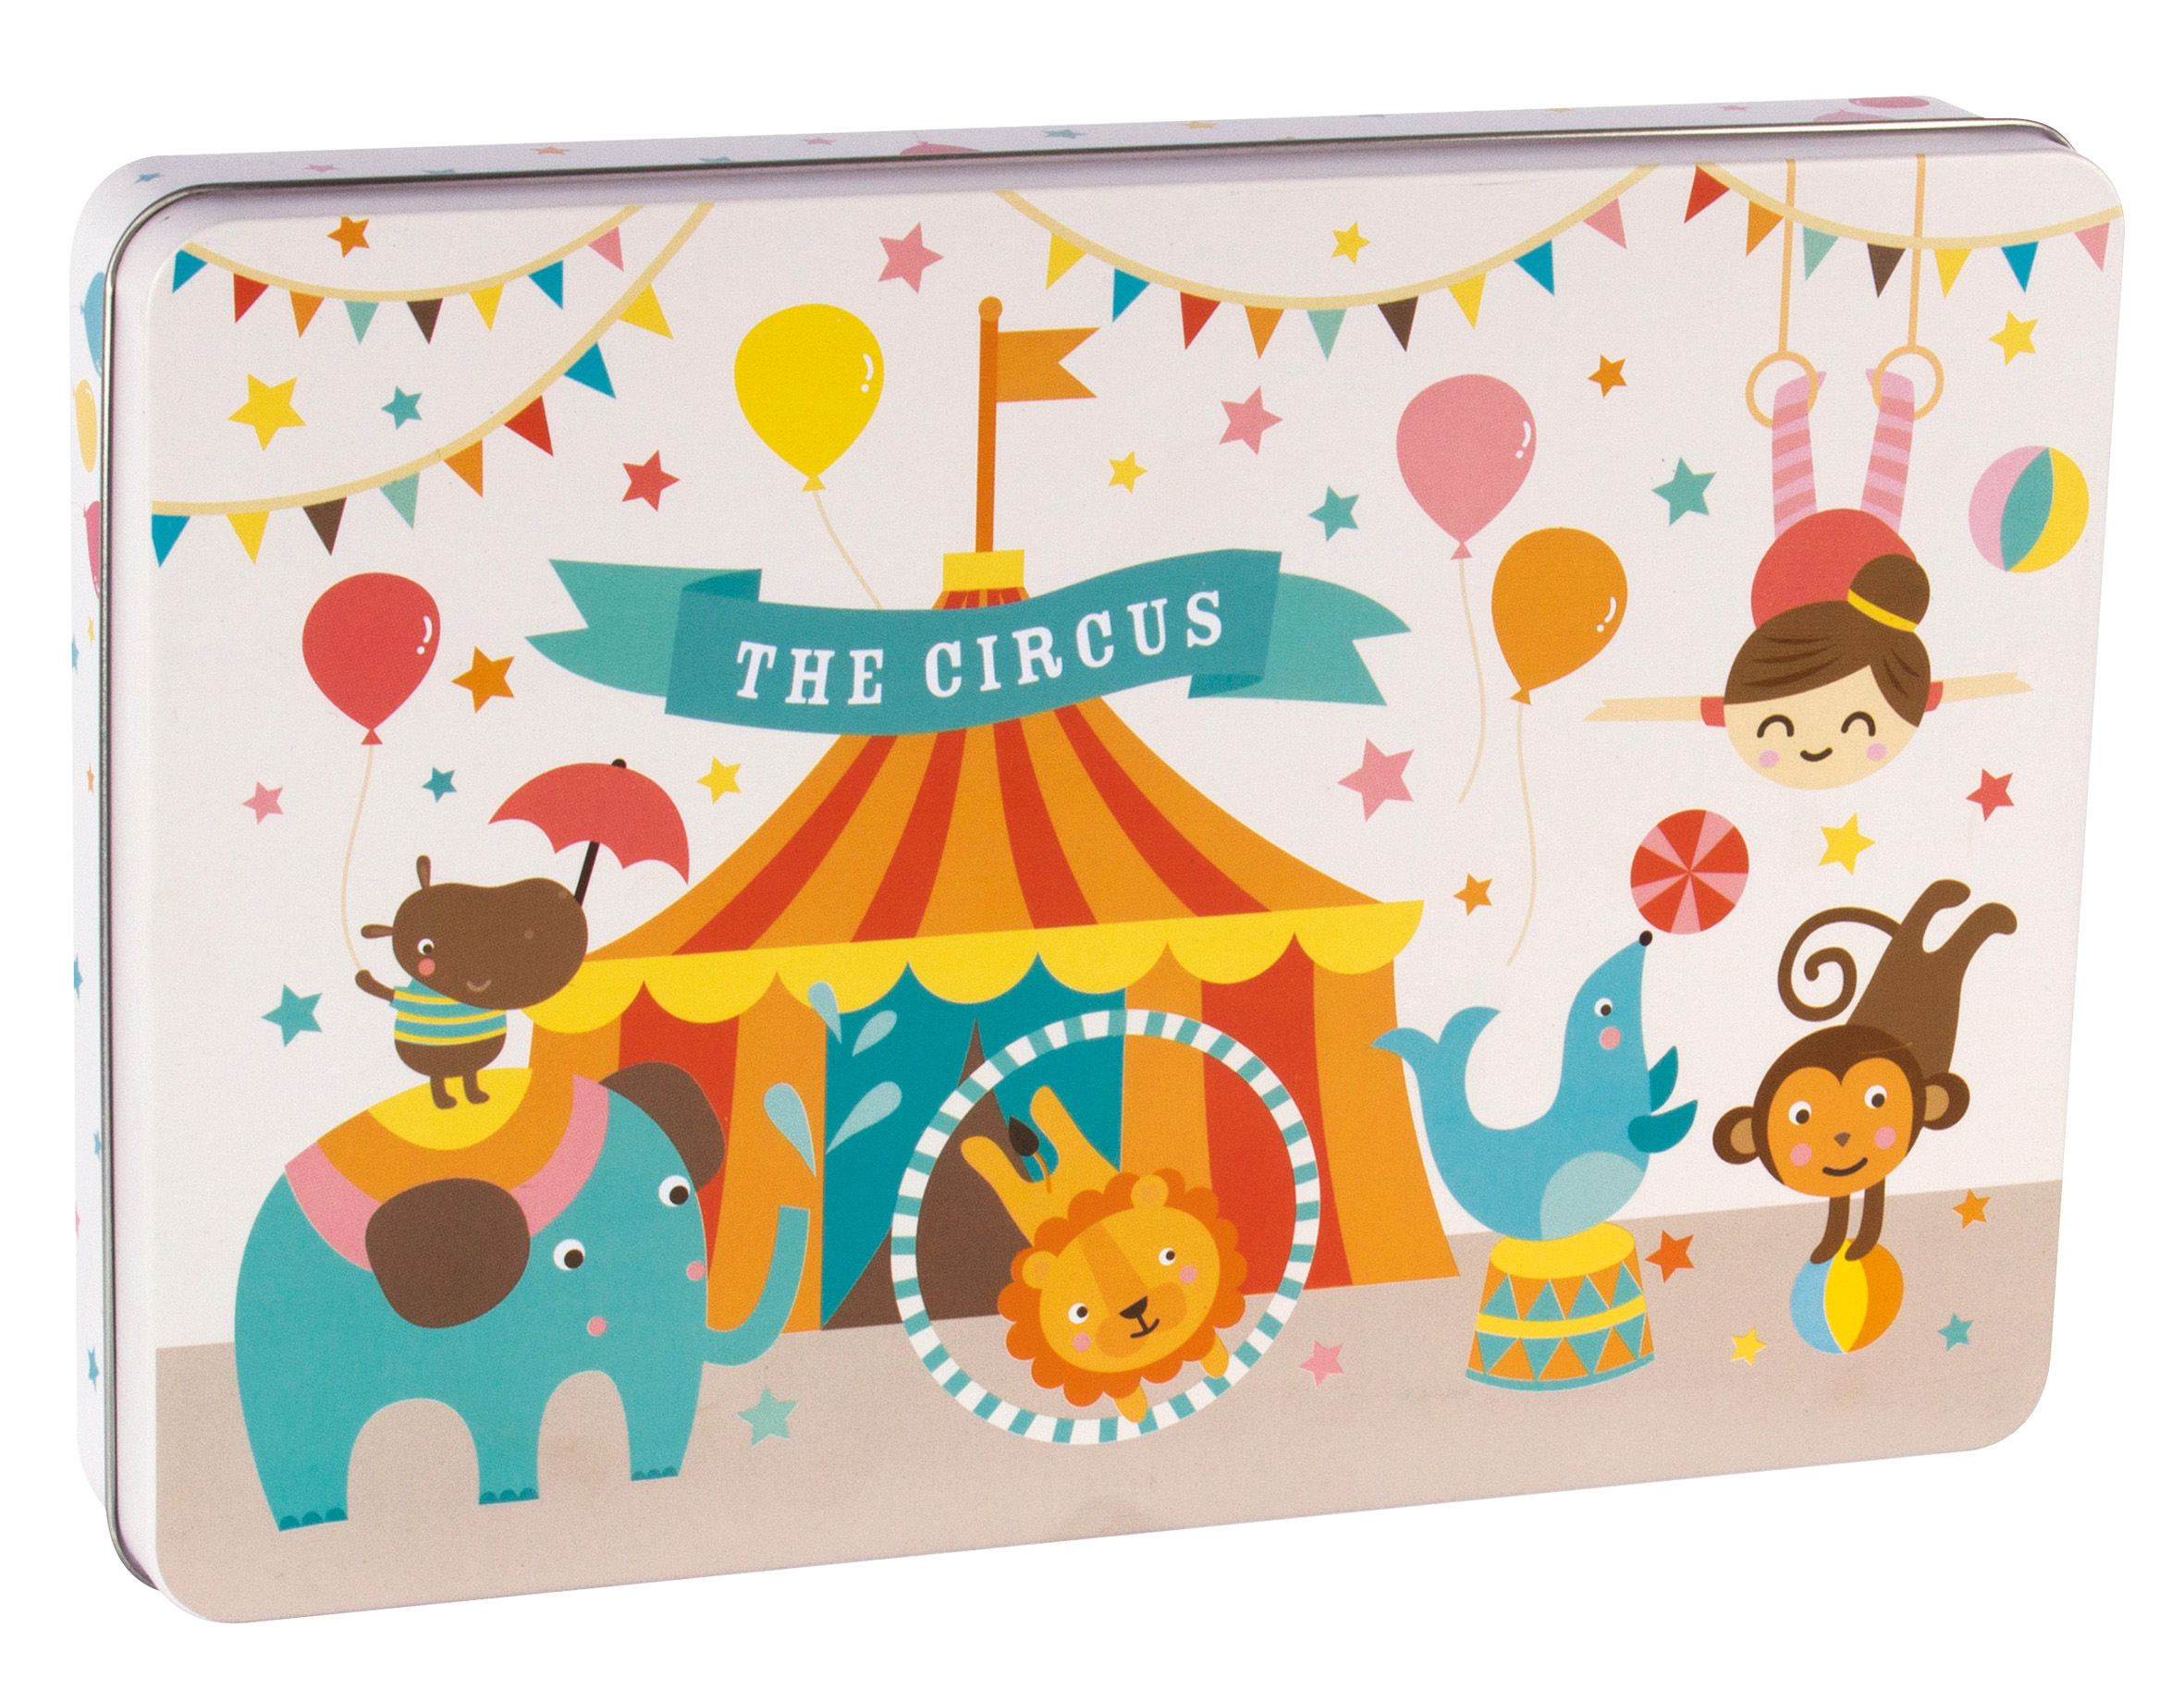 Puzzle Apli Kids Cirque - 24 Pièces de 8x8 cm - Boîte Métallique Rectangulaire - Design Exclusif Lily Lane - Manipulation Facile pour les Enfants - Carton 2mm avec Finition Brillante - Coloré et Transparent